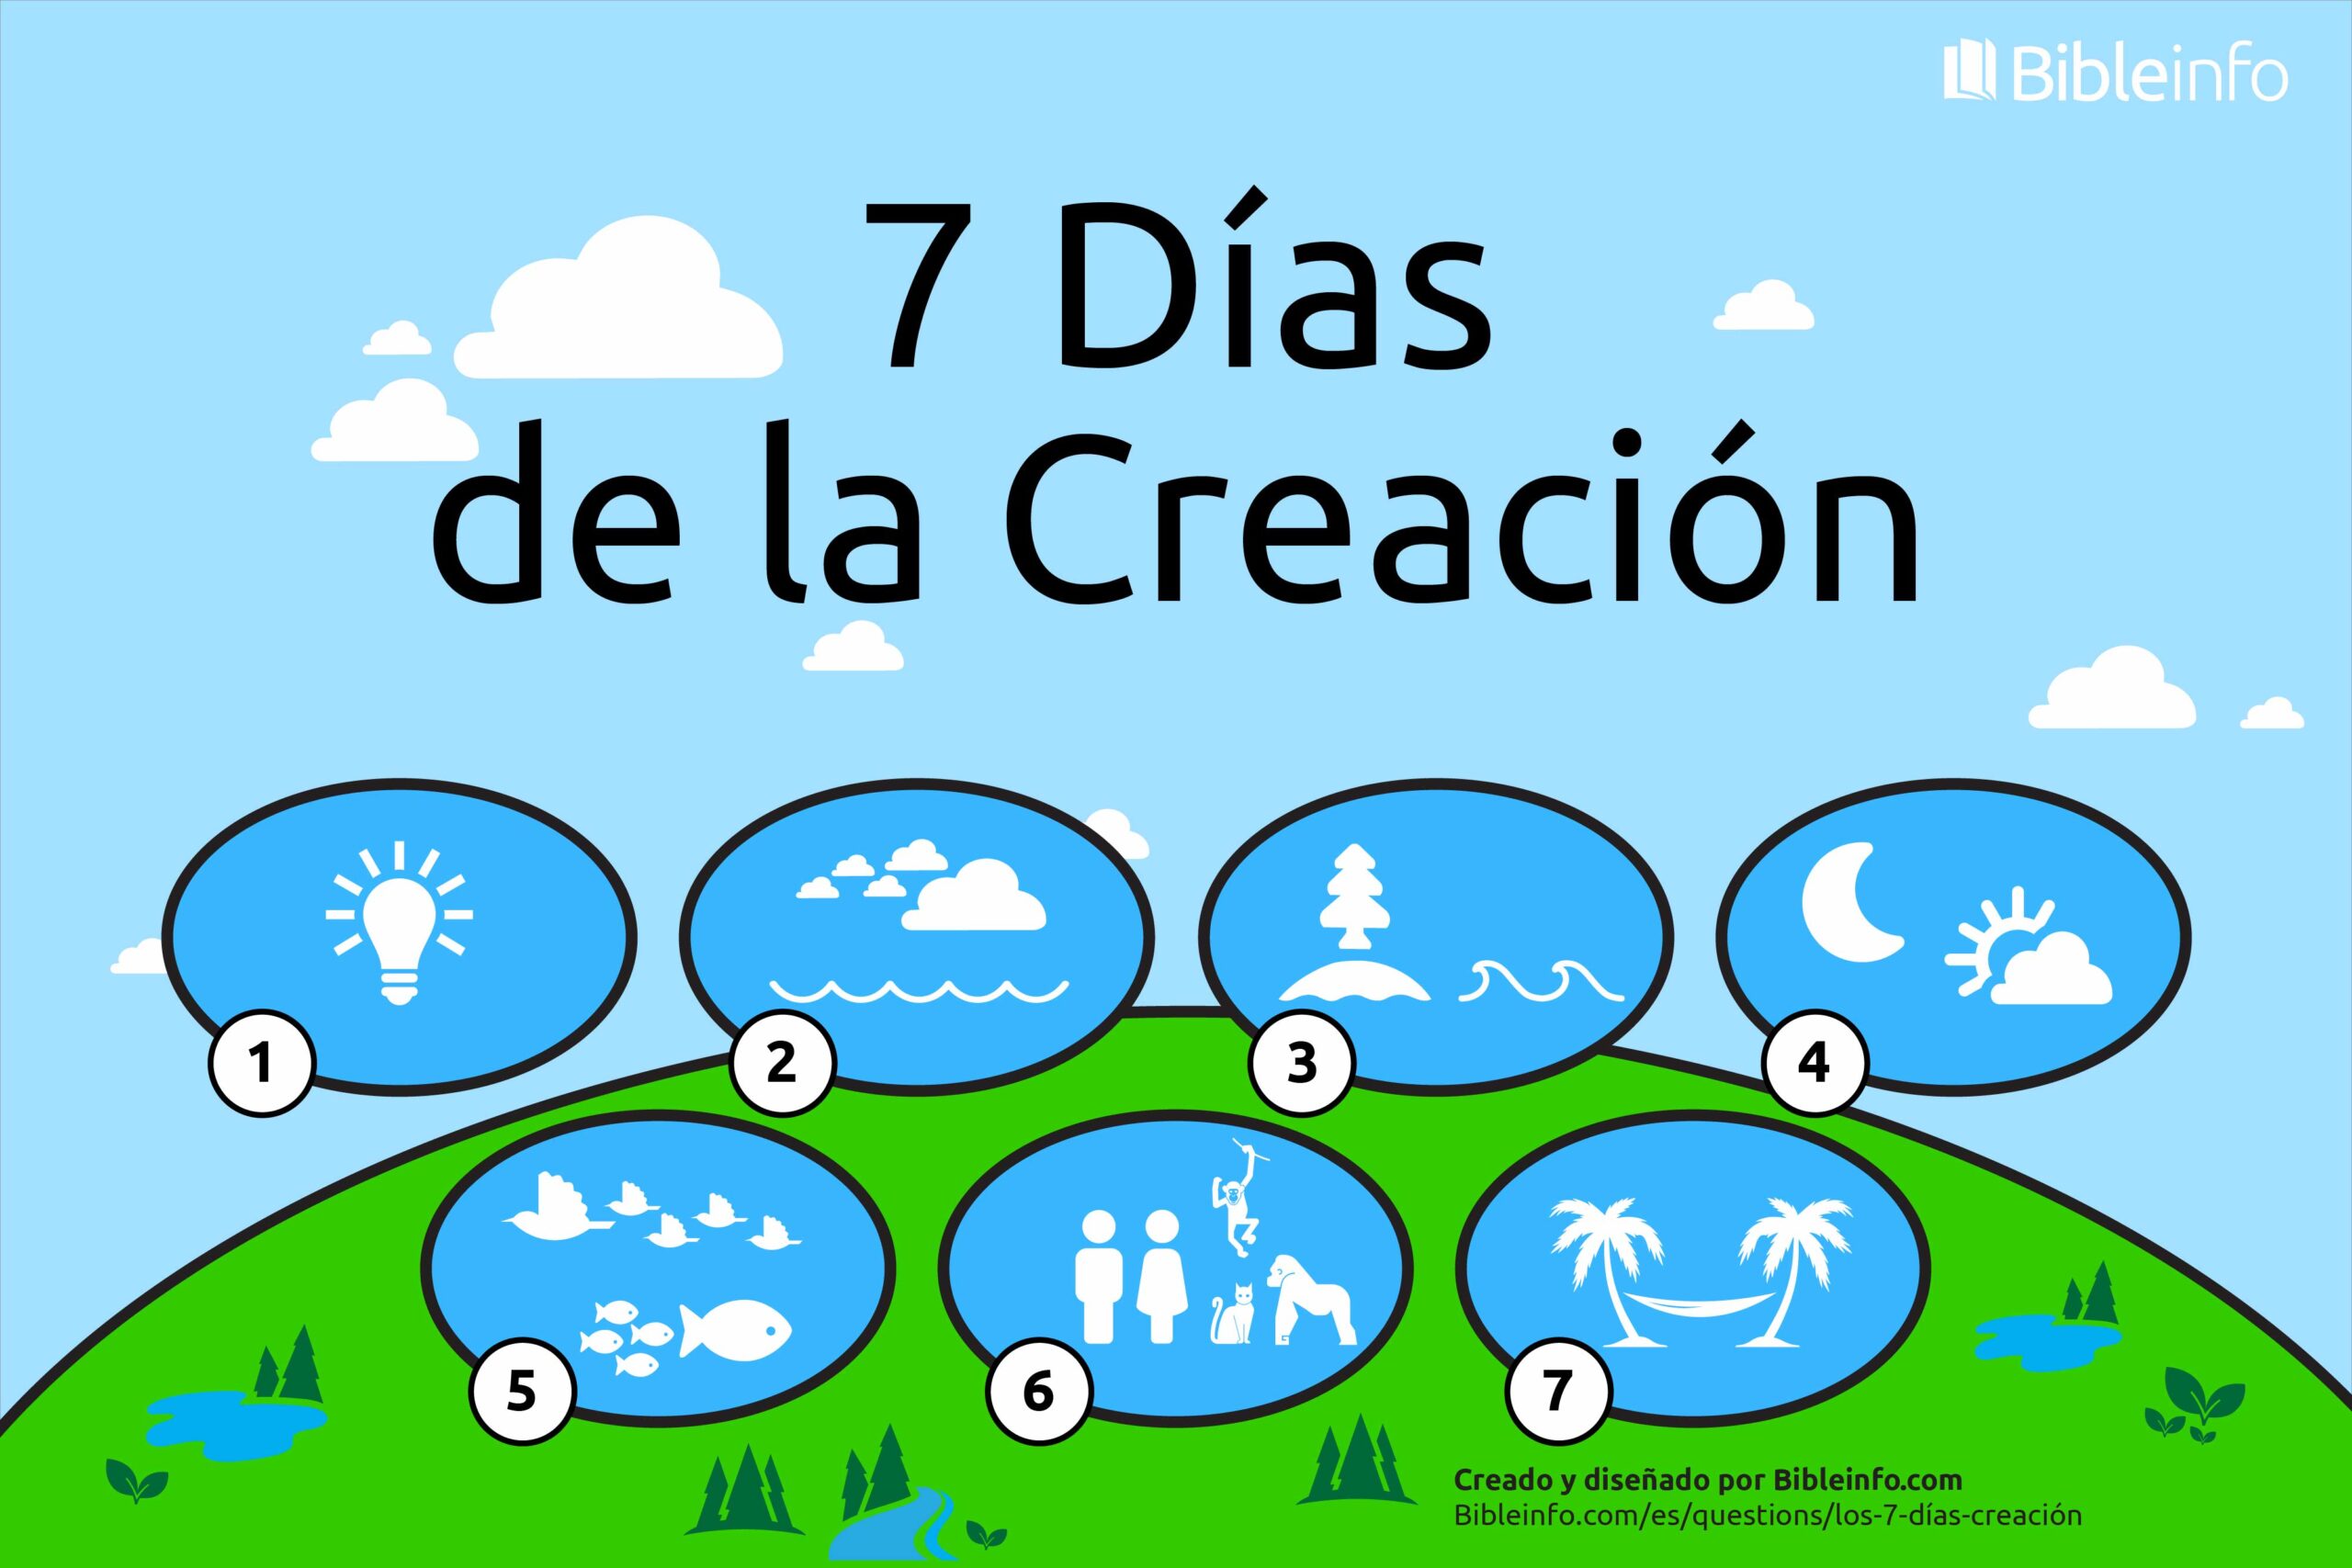 Los 7 días de la Creación de Dios